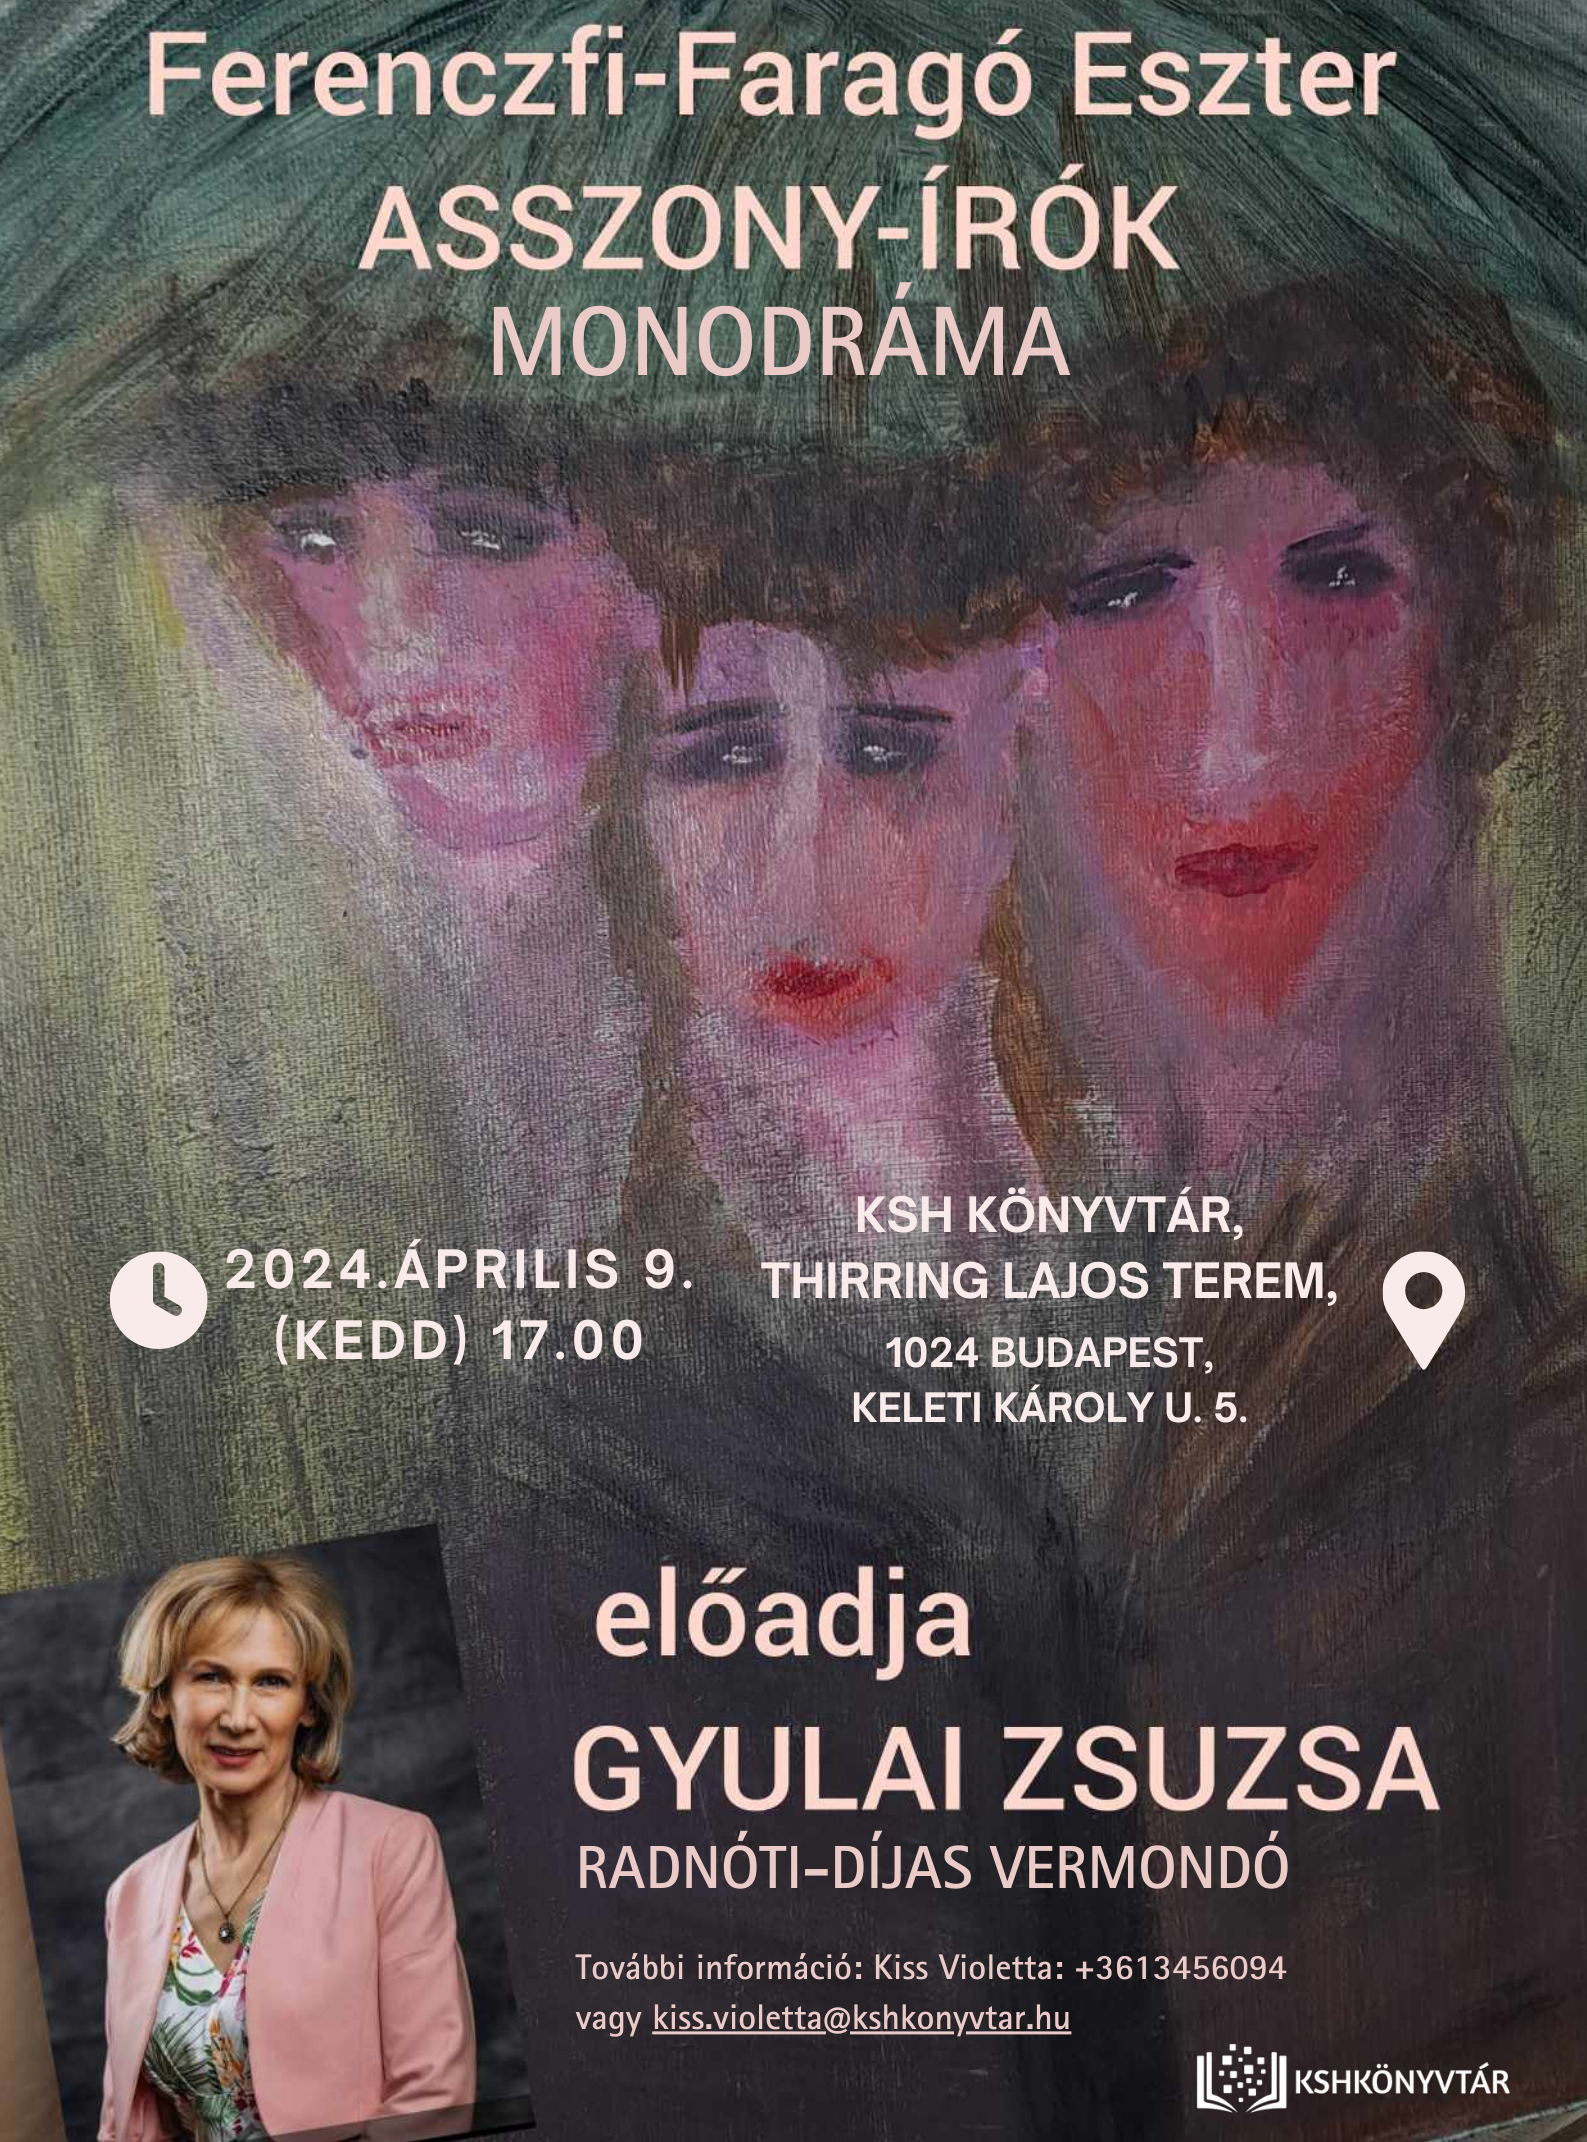 Ferenczi-Faragó Eszter Asszony-írók című monodrámájának bemutatója – Gyulai Zsuzsa előadásában